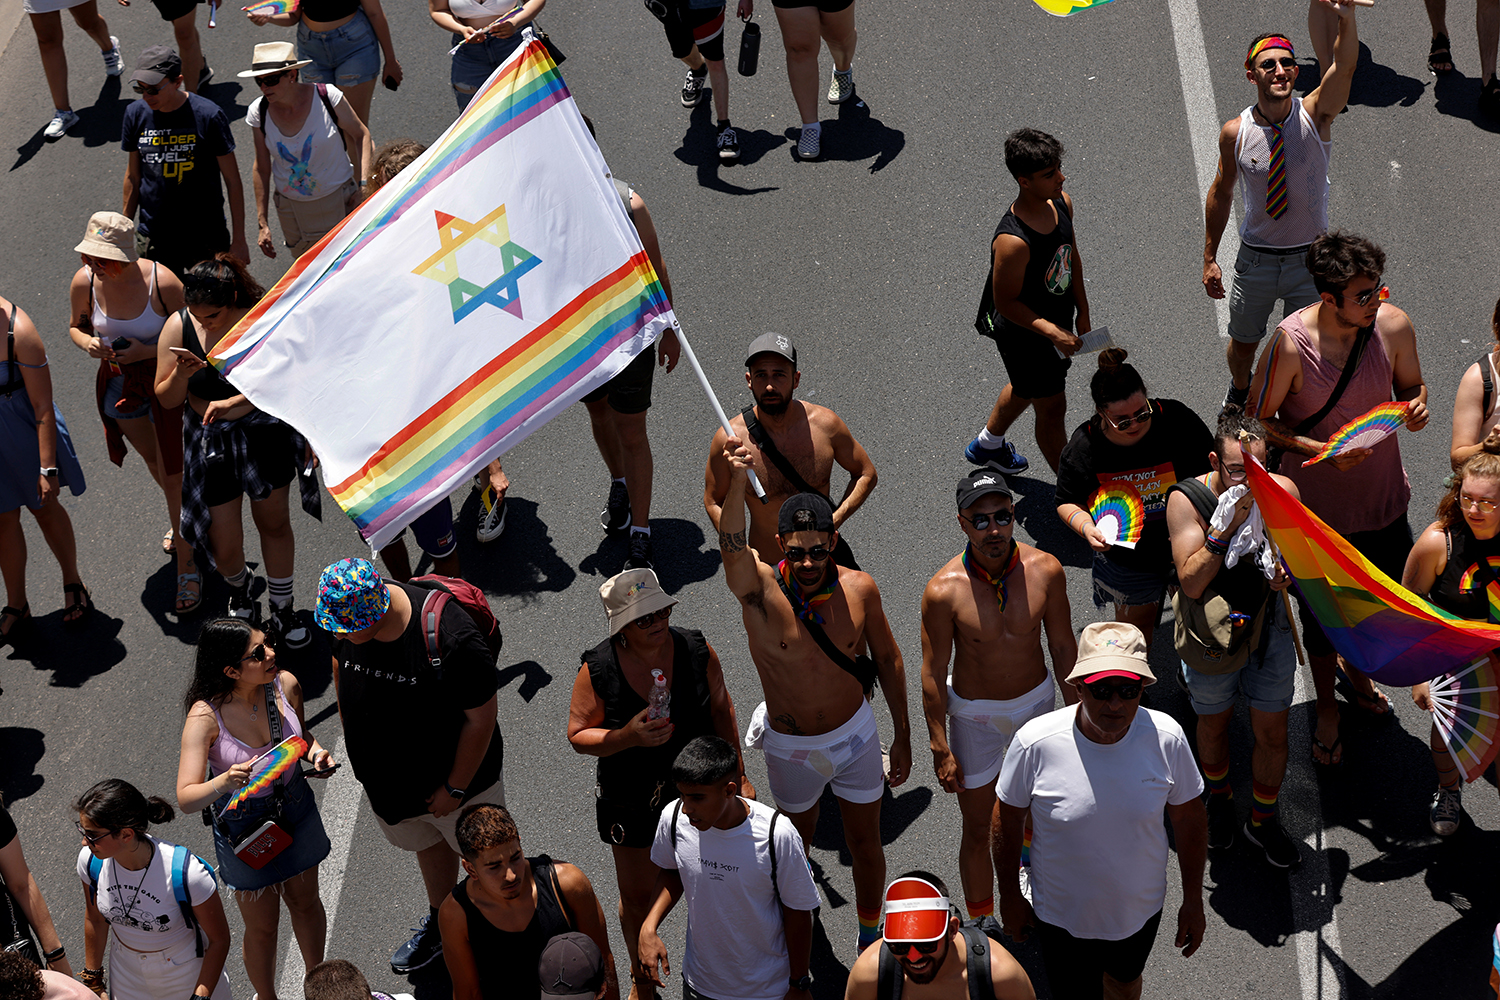 ЛГБТ-прайд в Тель-Авиве собрал больше 100 тысяч человек. Фото - Вот Так